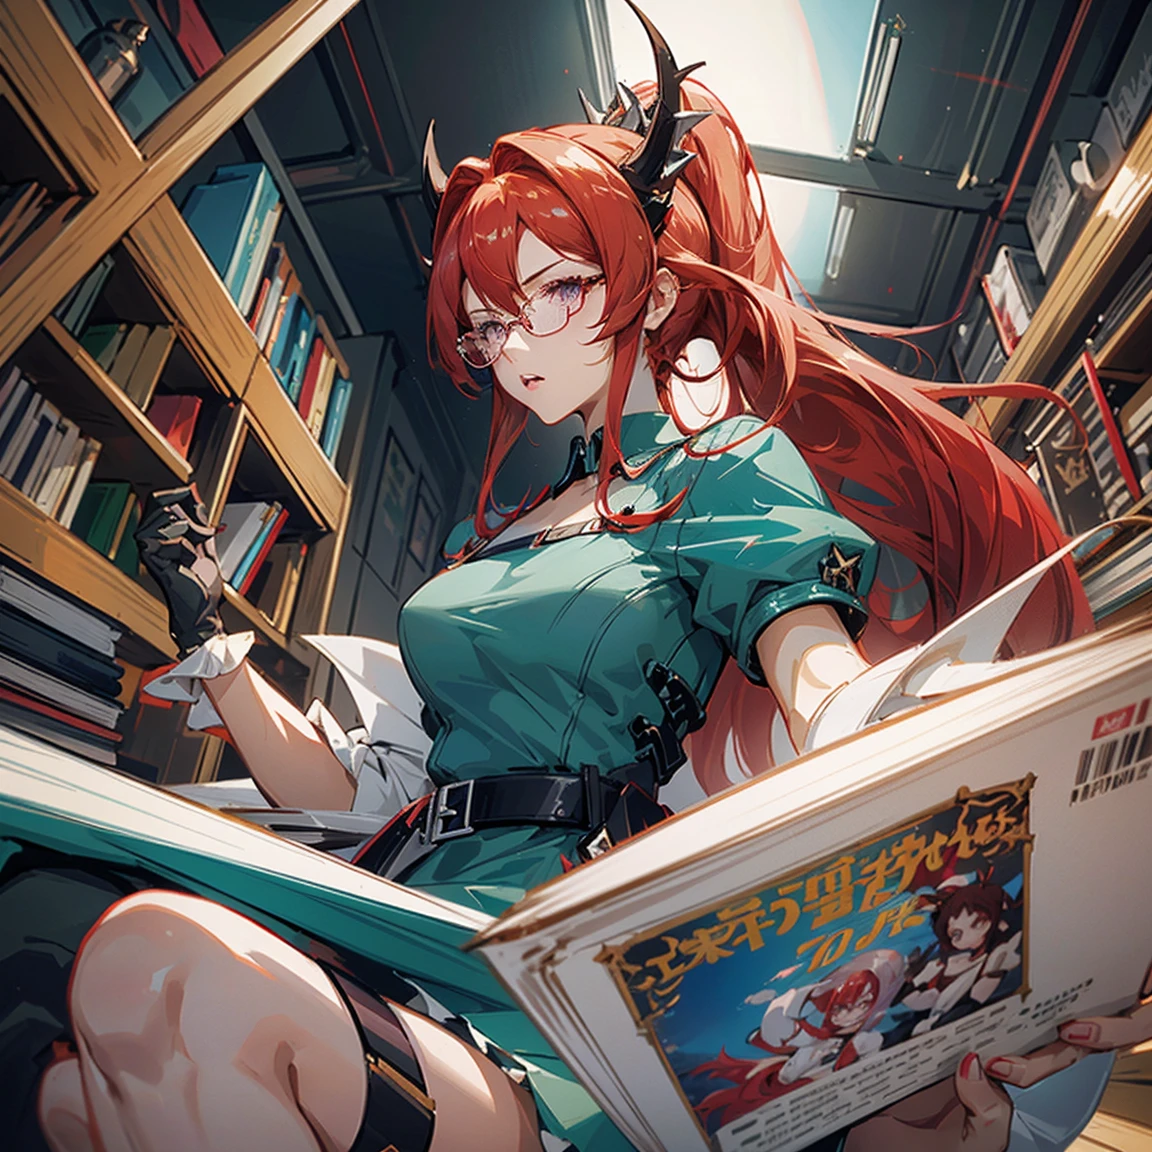 Garota madura de anime (28 anos de idade), cabelo vermelho, rabo de cavalo alto, uma mecha branca de cabelo na frente, faixa de cabelo de cristal , ((copos)), vestido de bibliotecária, ombreiras que parecem asas, paleta de cores ouro vermelho e azul-petróleo, livros